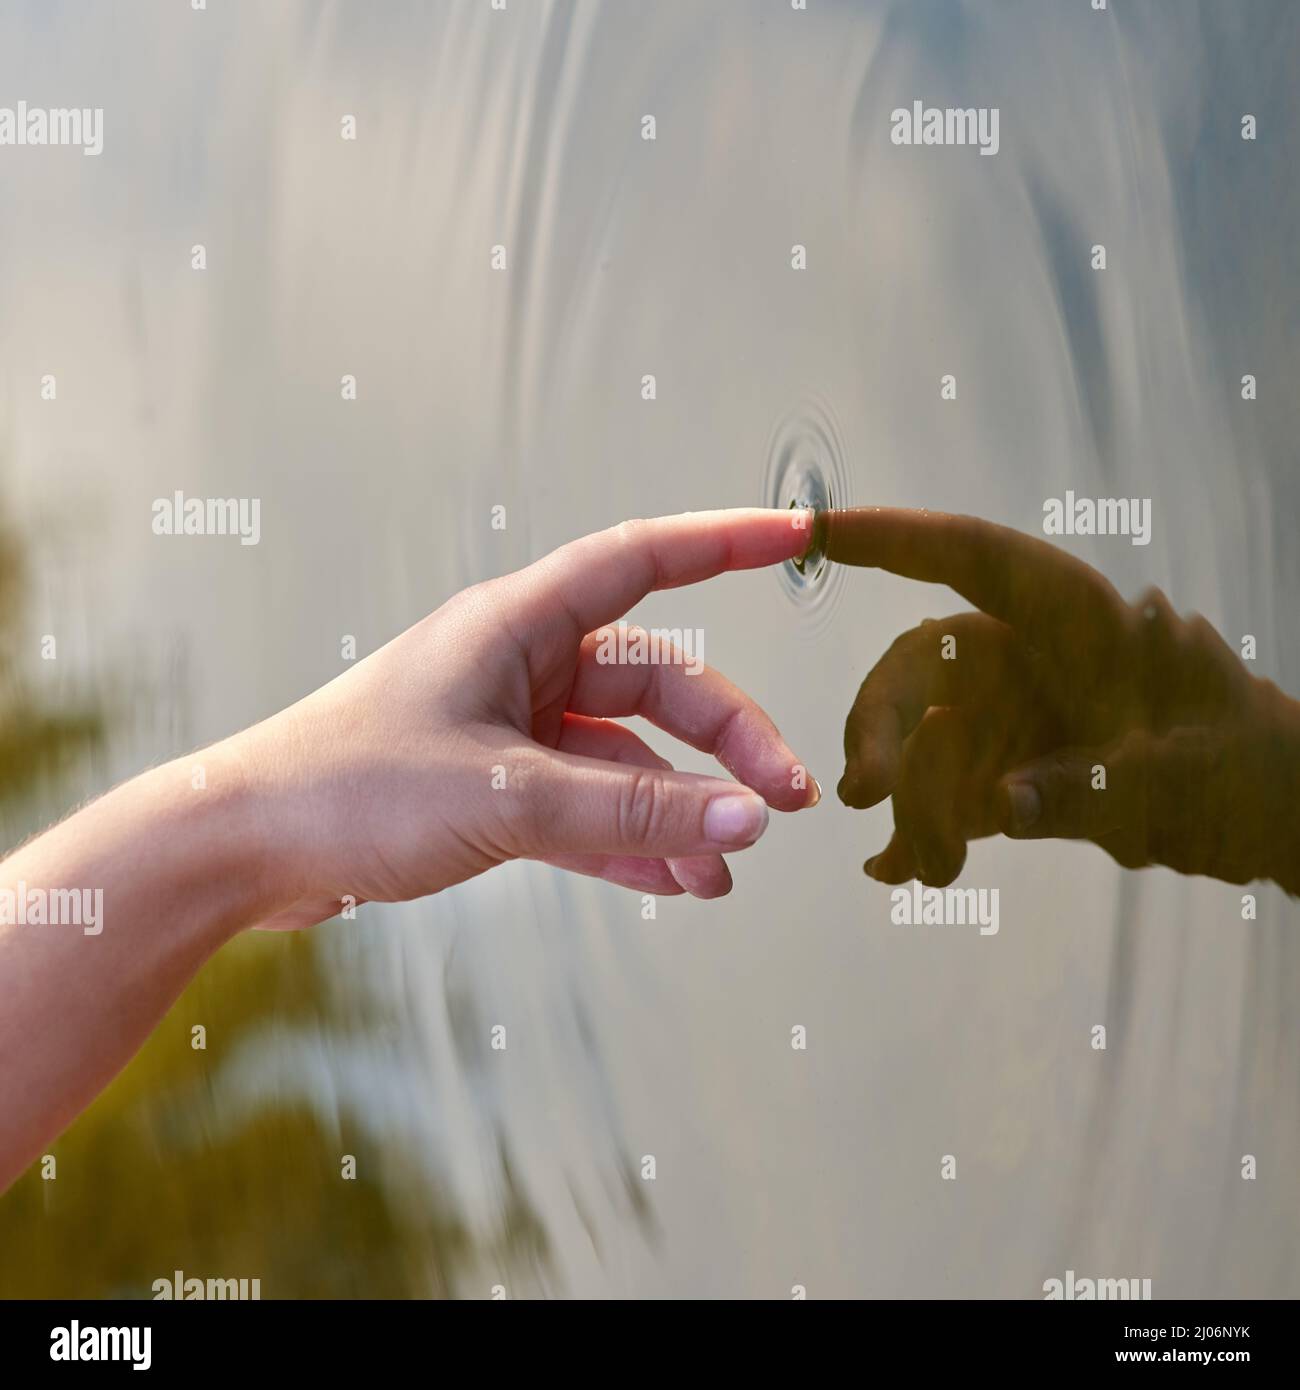 Der Welligkeit-Effekt. Zugeschnittenes Bild eines Fingers, der Wasser berührt, um Wellen zu bilden. Stockfoto